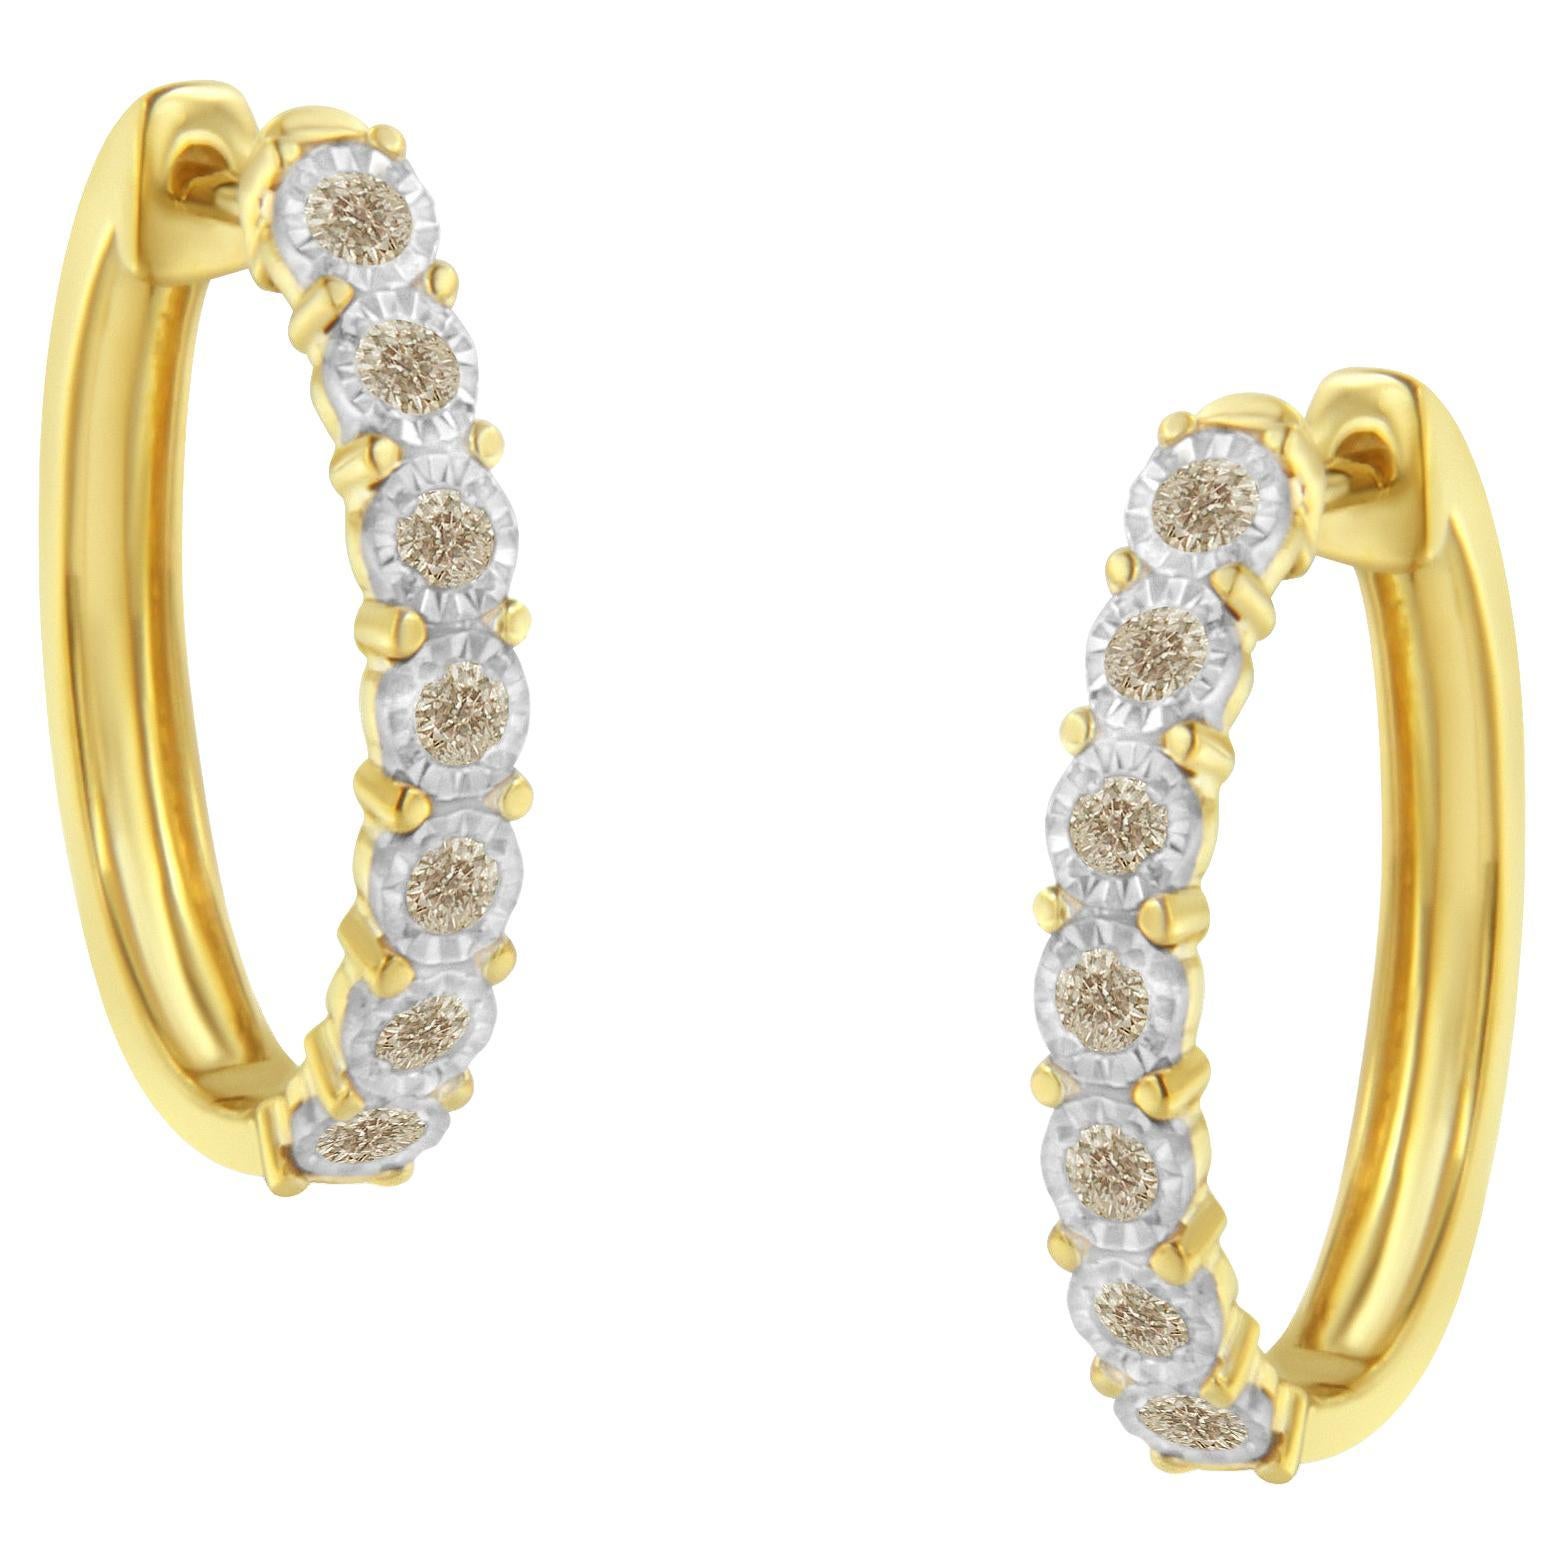 10K Two-Toned Gold 1/2 Carat Diamond Hoop Earrings